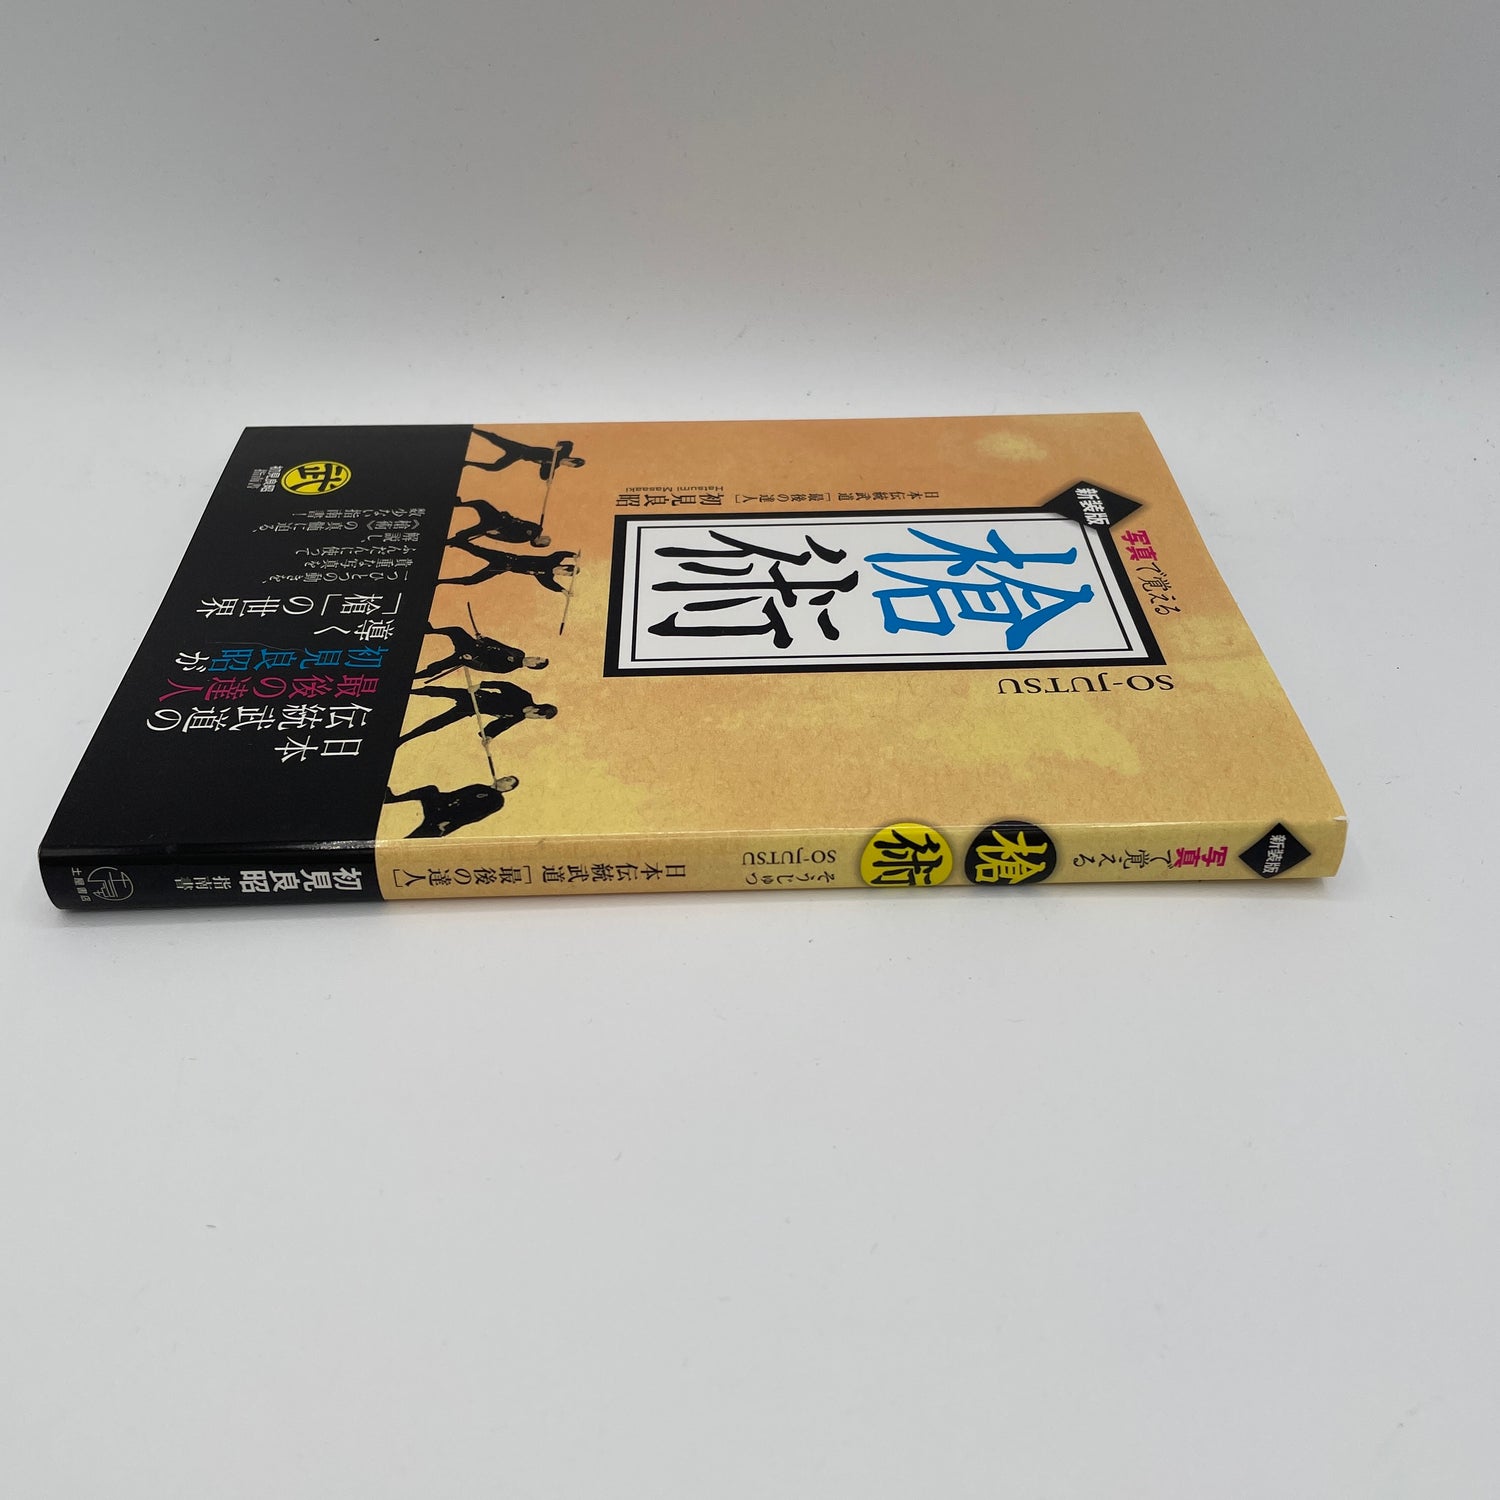 Libro Sojutsu (Lanza) de Masaaki Hatsumi